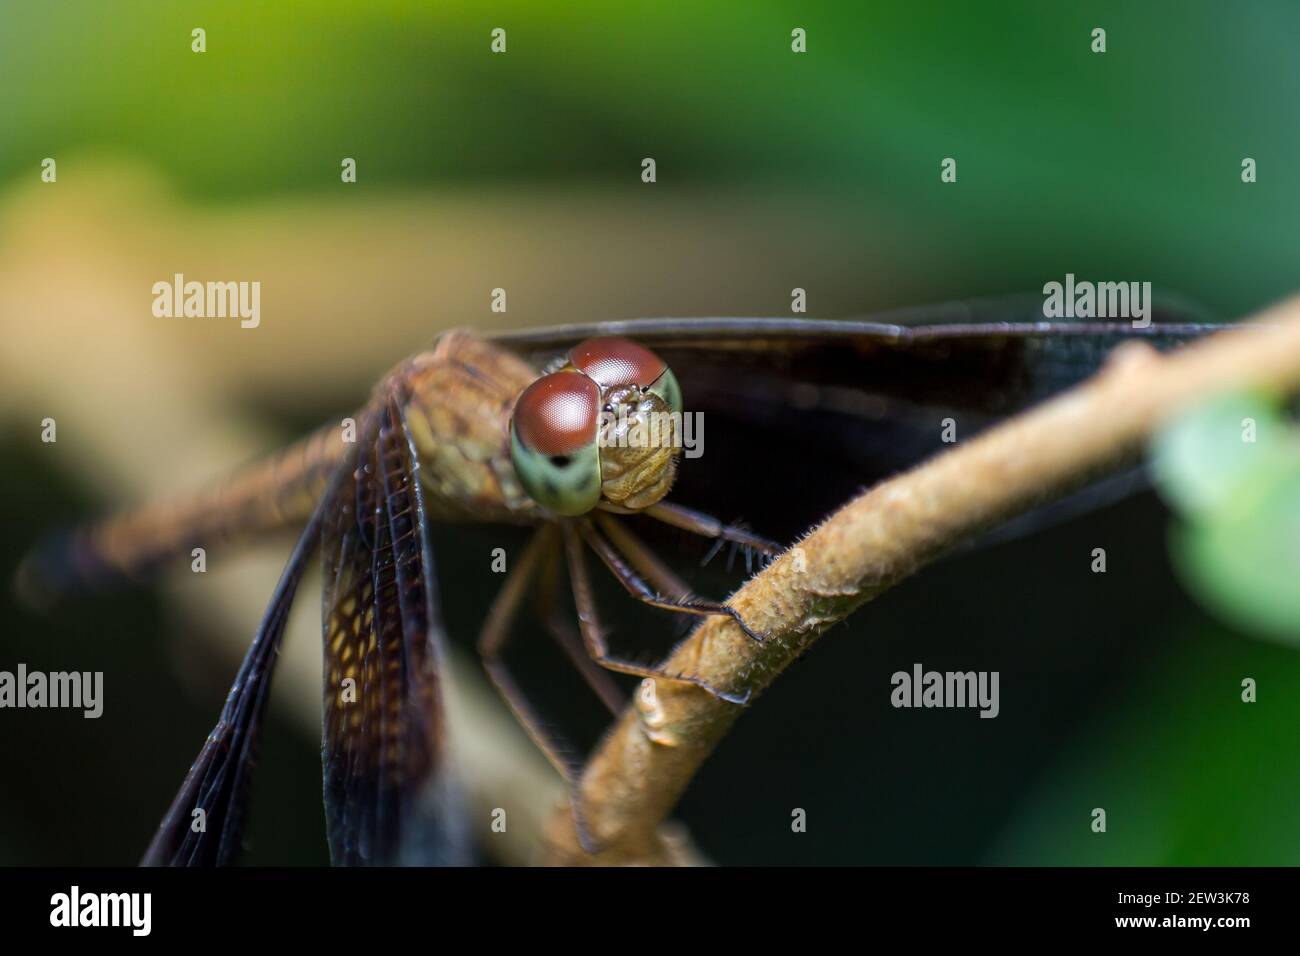 Schöne Naturbilder Libelle Zeige die Details des Kopfes Und die Augen sind erstaunlich Stockfoto